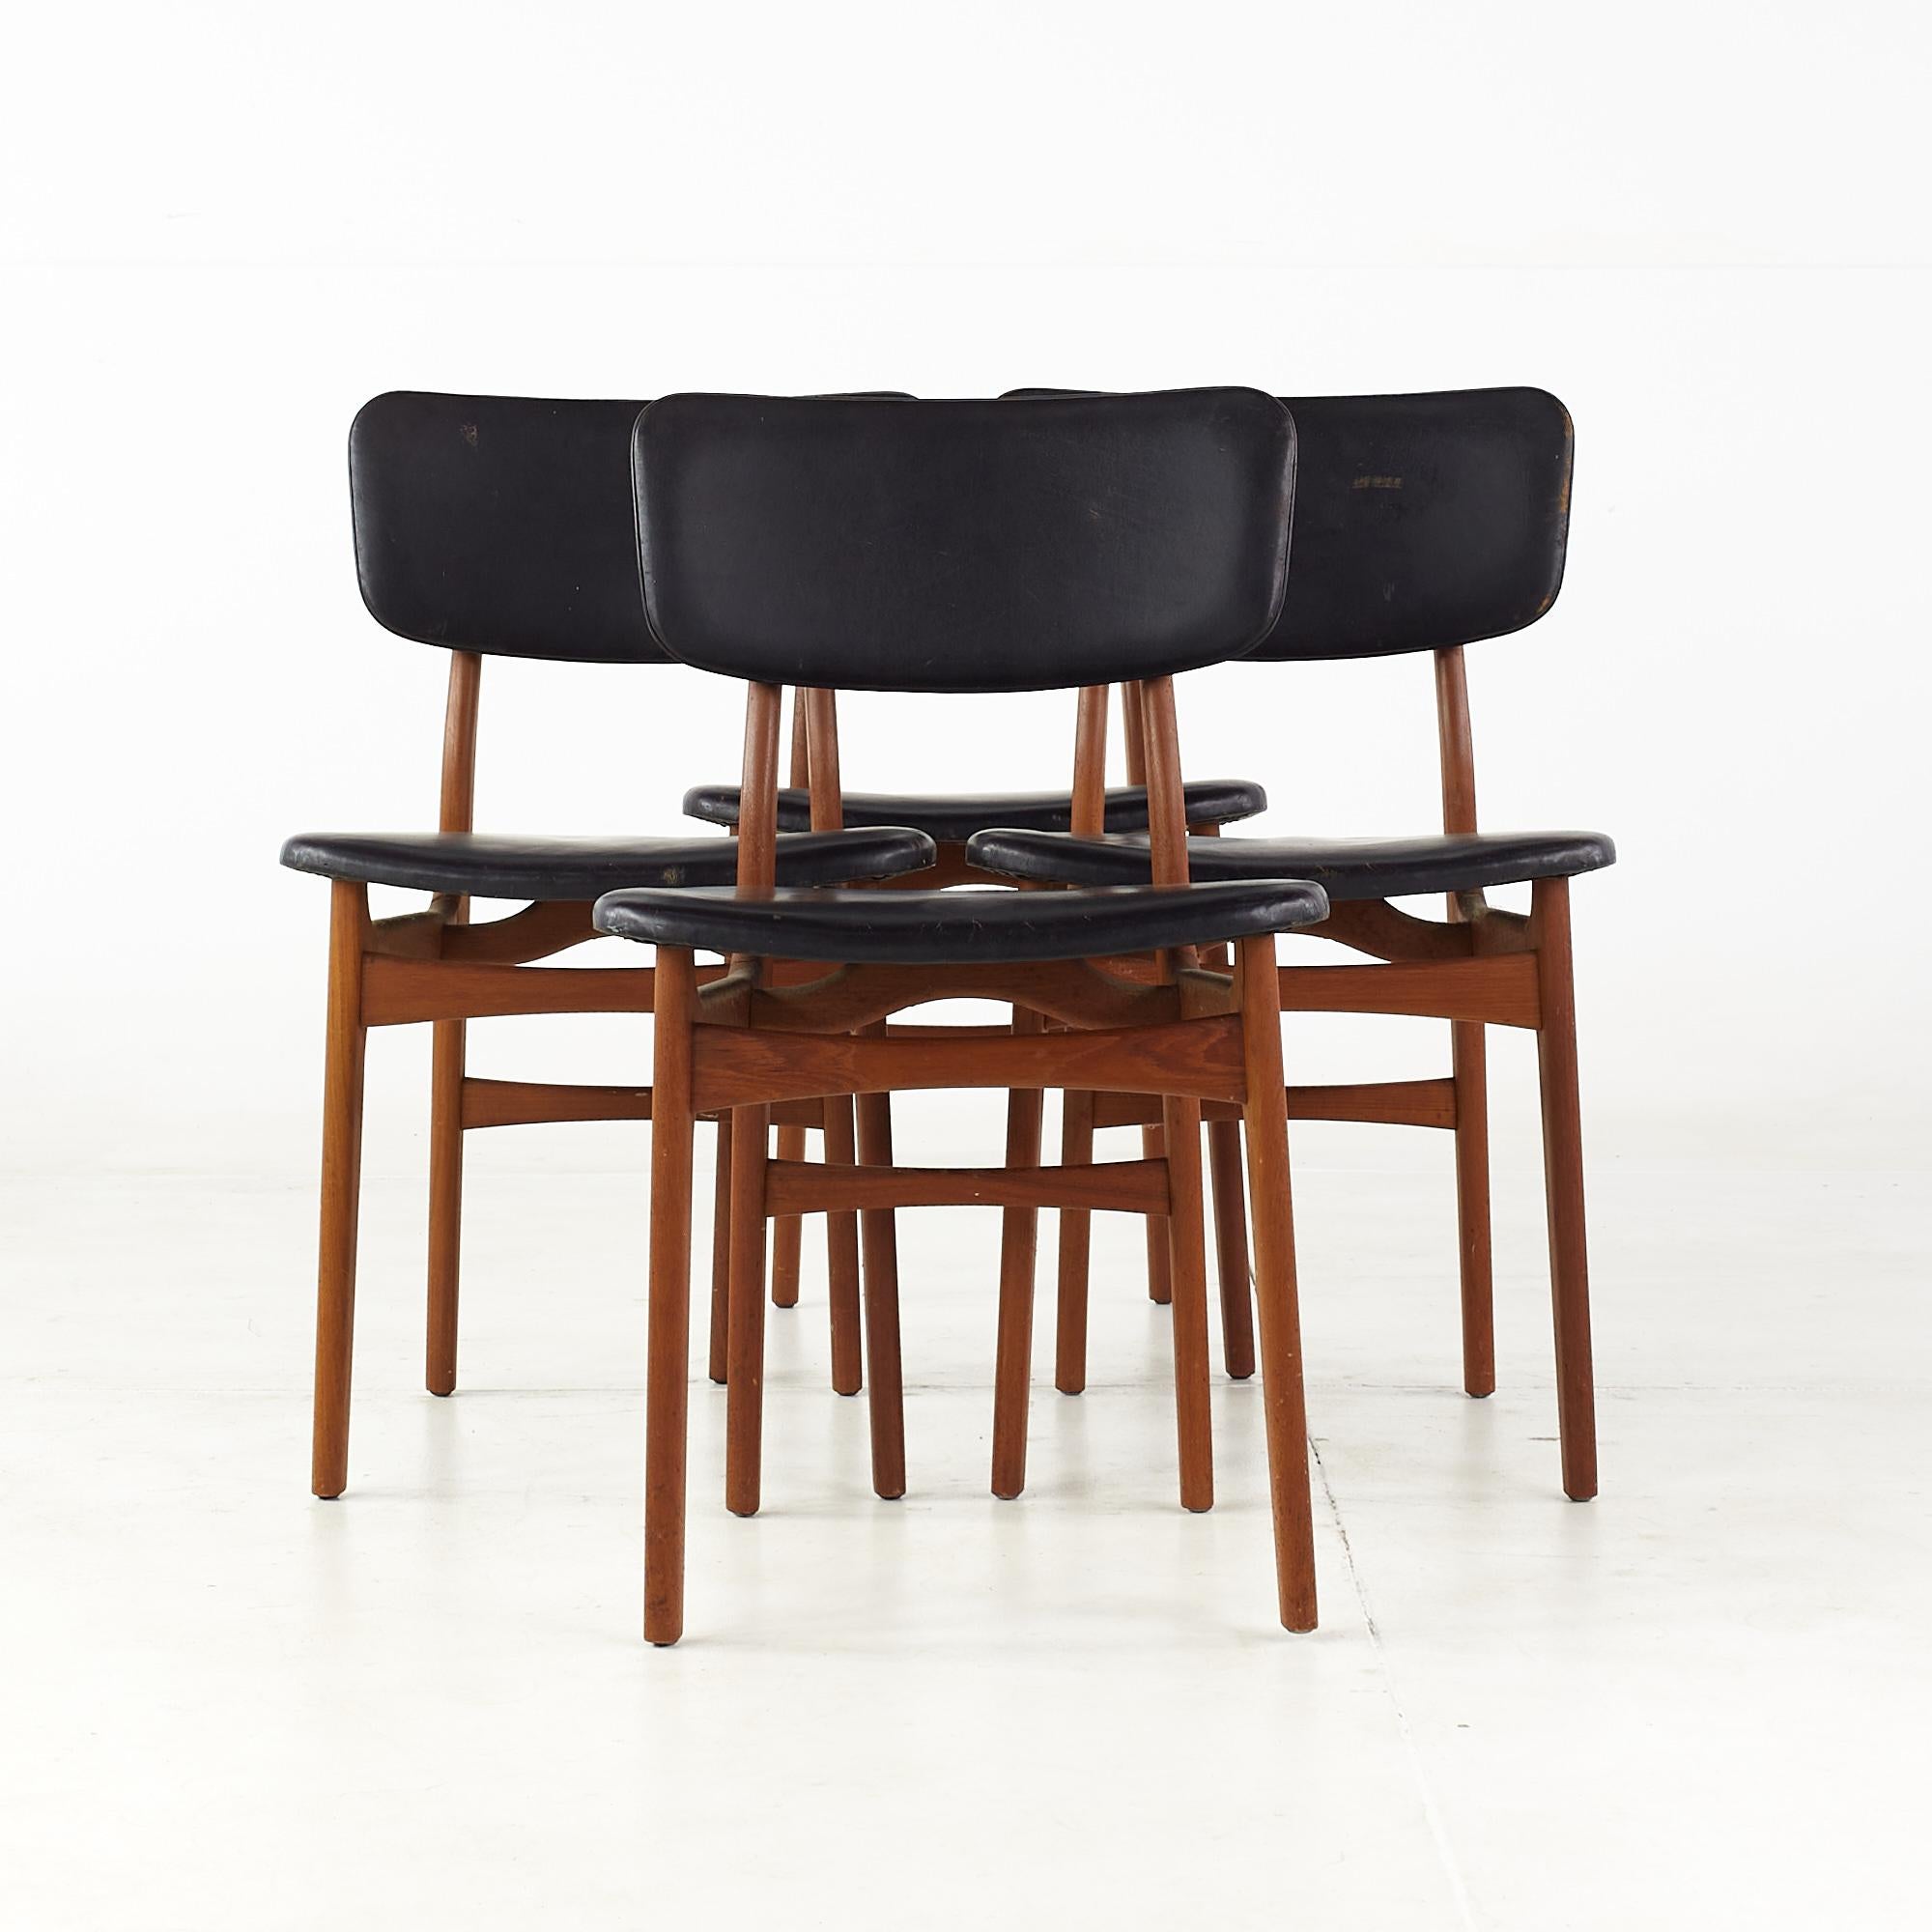 Chaises de salle à manger en teck danois du milieu du siècle - ensemble de 4

Ces chaises mesurent : 18,25 de large x 19 de profond x 31 pouces de haut, avec une hauteur d'assise et un dégagement de 18 pouces.

Tous les meubles peuvent être